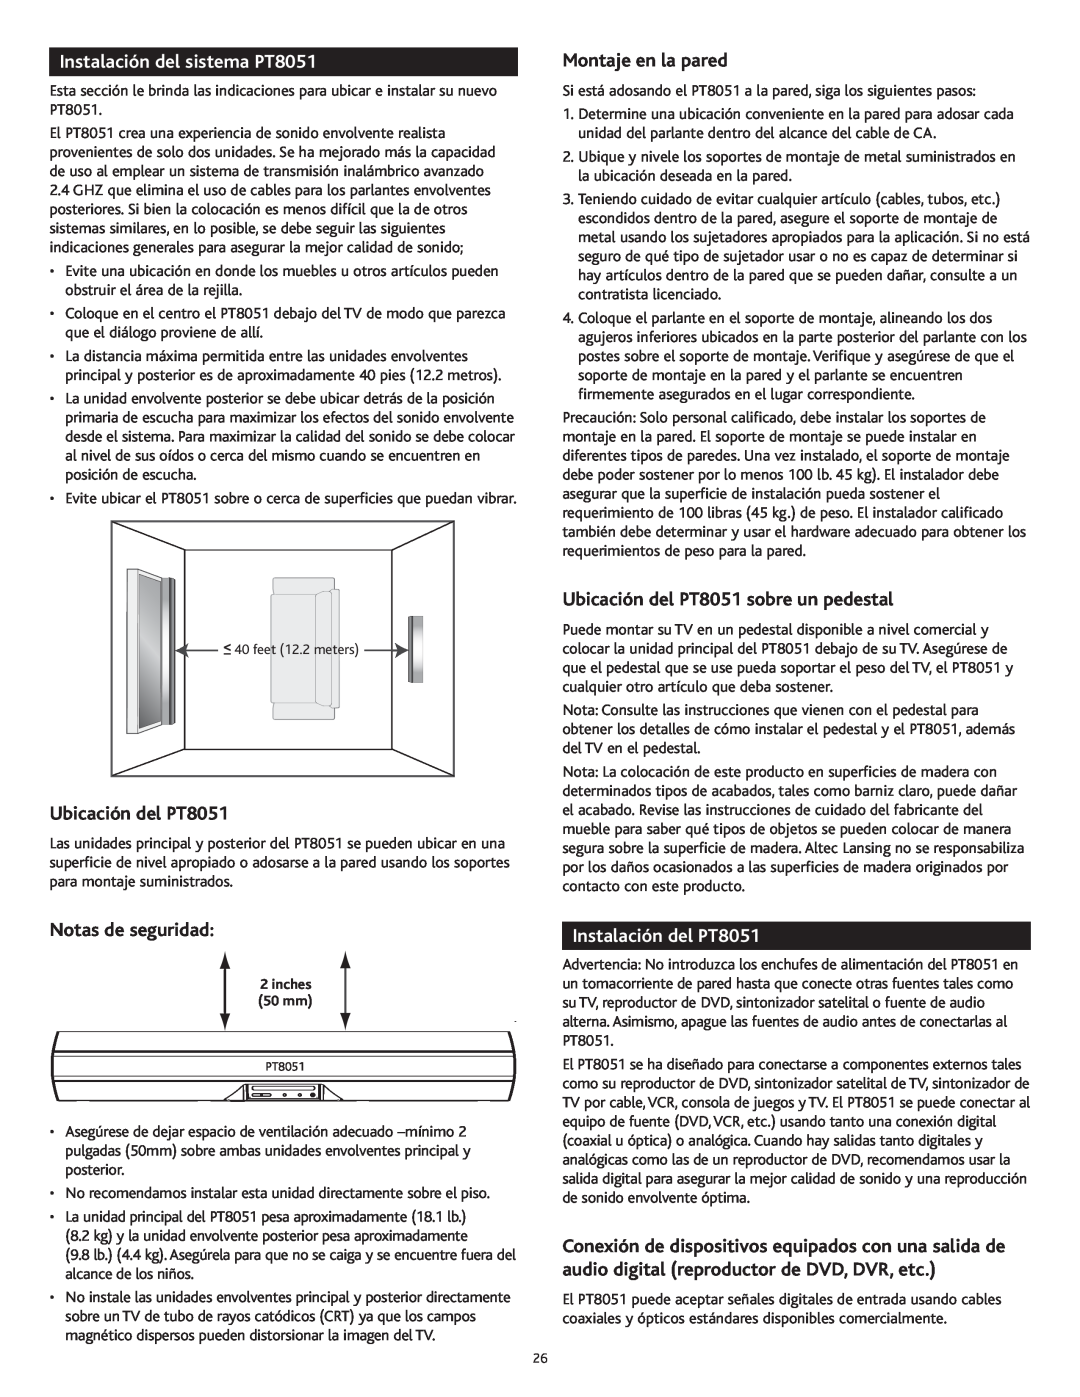 Altec Lansing manual Instalación del sistema PT8051, Ubicación del PT8051, Montaje en la pared, Notas de seguridad 